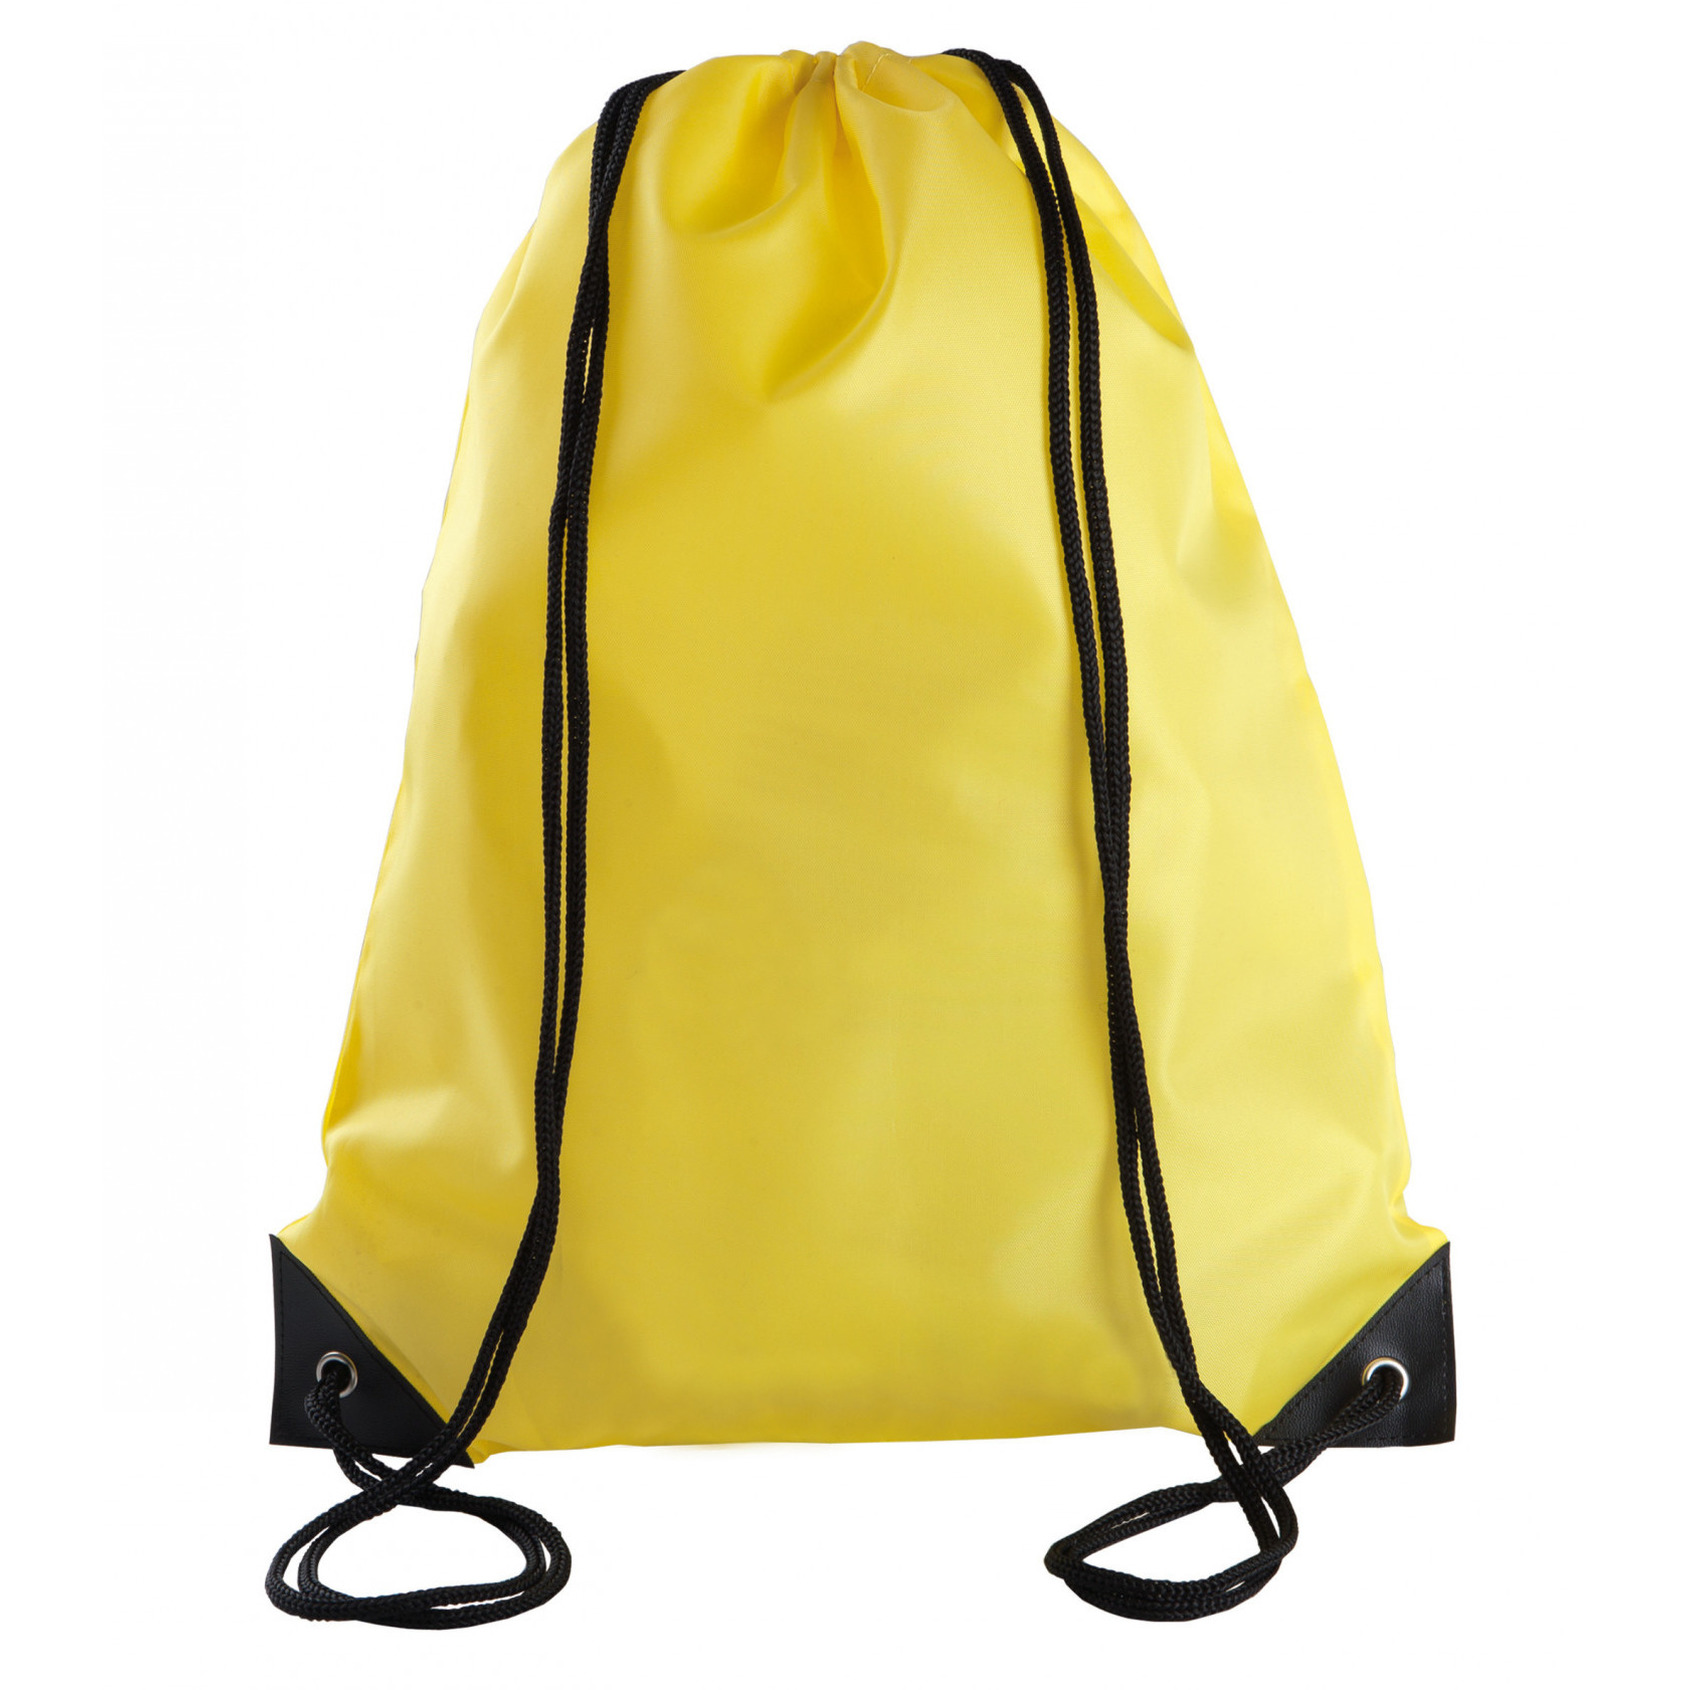 Sport gymtas-draagtas geel met rijgkoord 34 x 44 cm van polyester